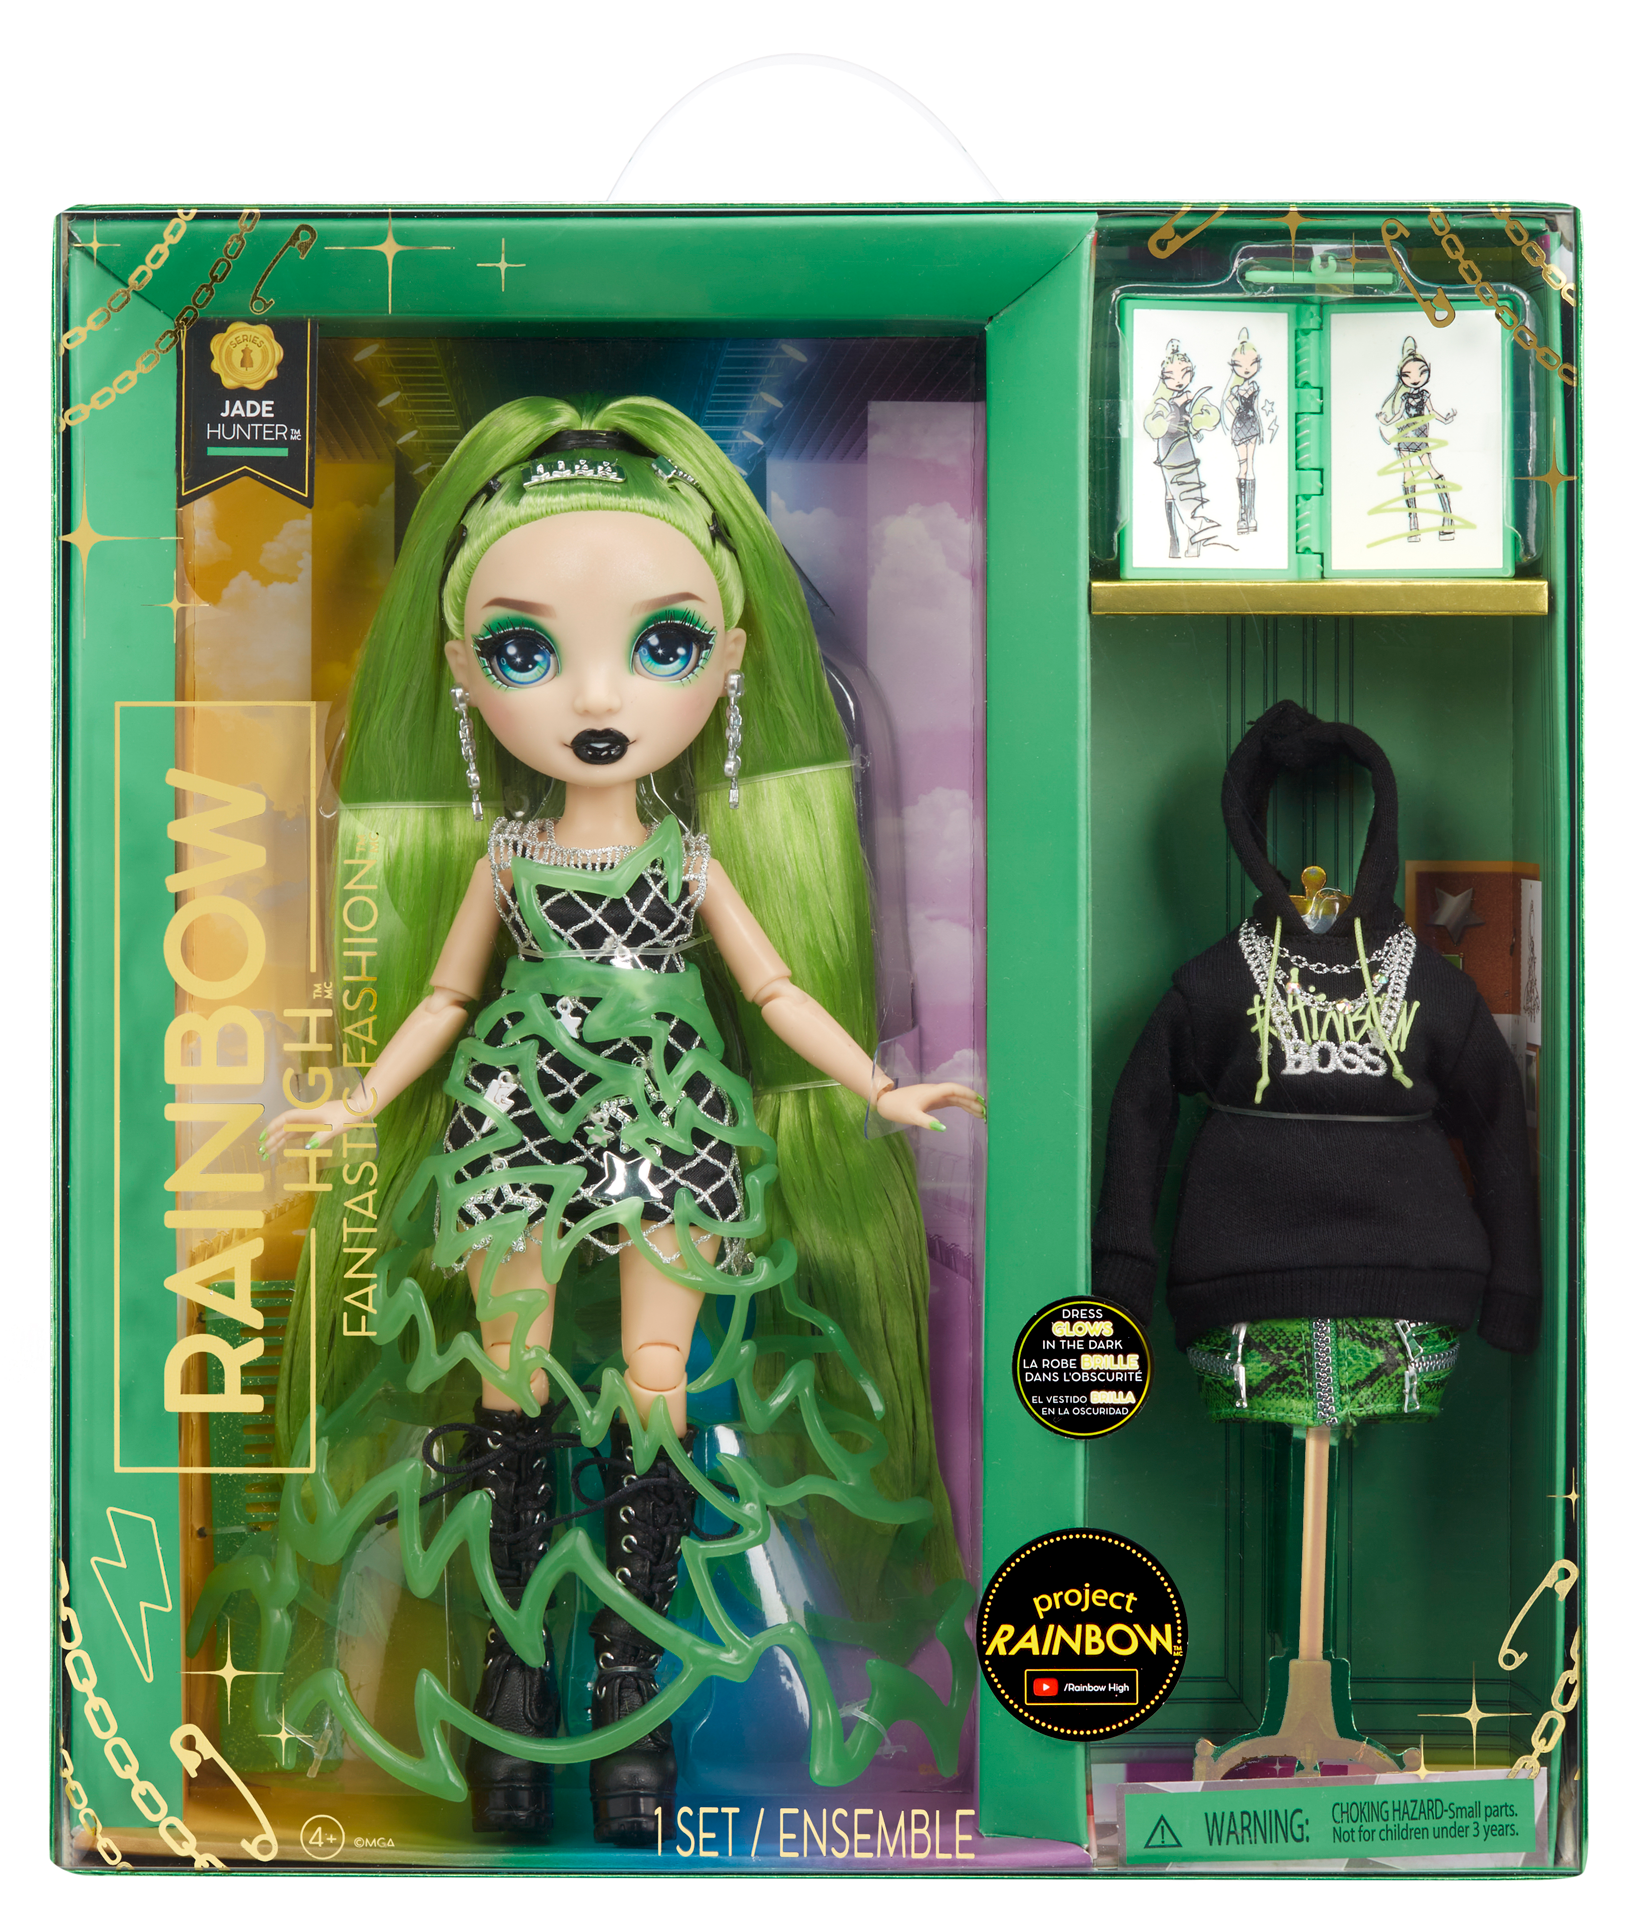 Rainbow high fantastic fashion doll - jade hunter - bambola alla moda verde e set da gioco con 2 abiti e accessori moda - Rainbow High